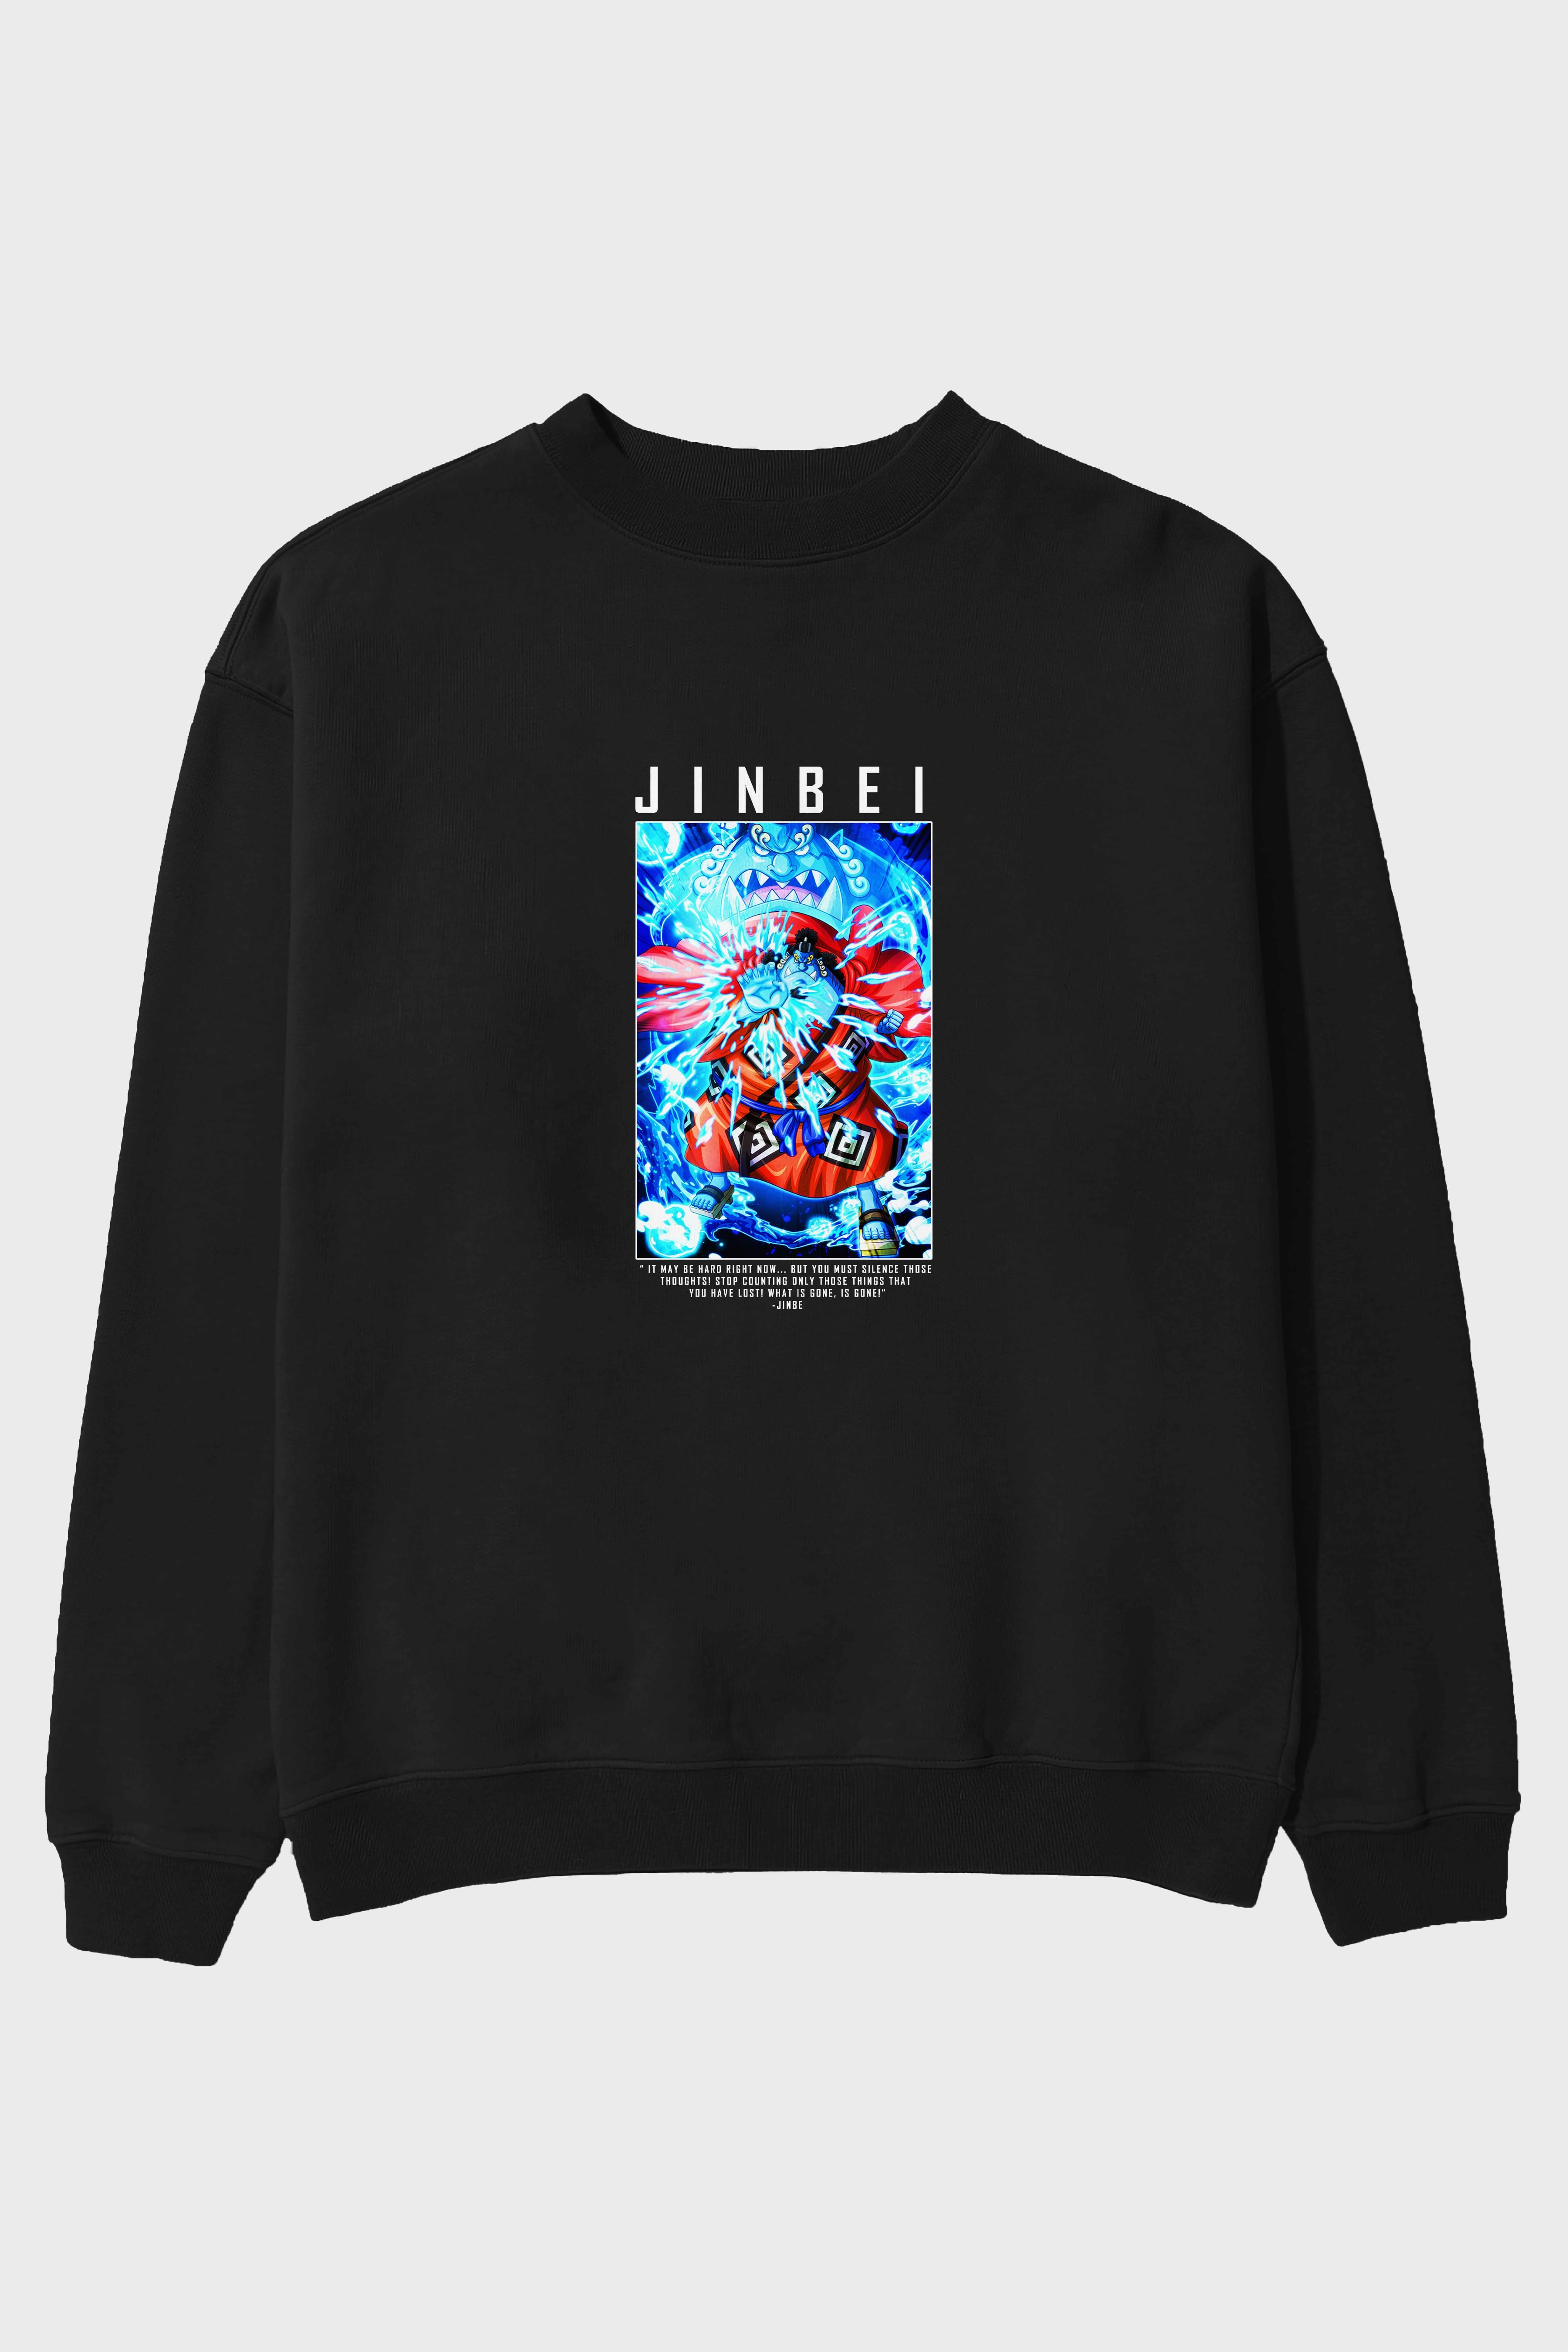 Jinbei Ön Baskılı Anime Oversize Sweatshirt Erkek Kadın Unisex